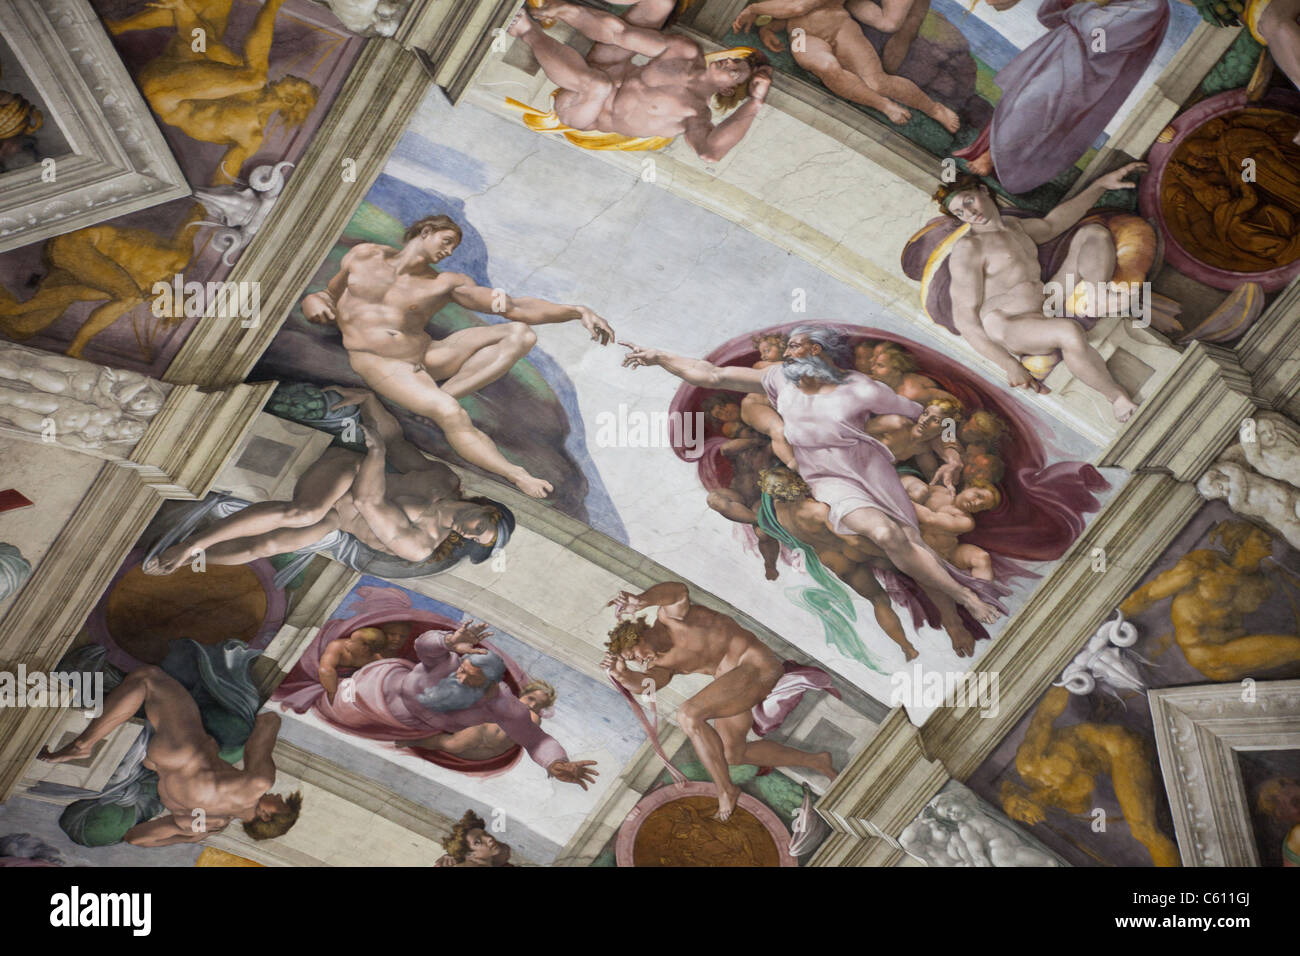 Italien, Rom, Vatikan, Vatikanischen Museen, Sixtinische Kapelle, Michelangelos Fresko von der Erschaffung Adams Stockfoto